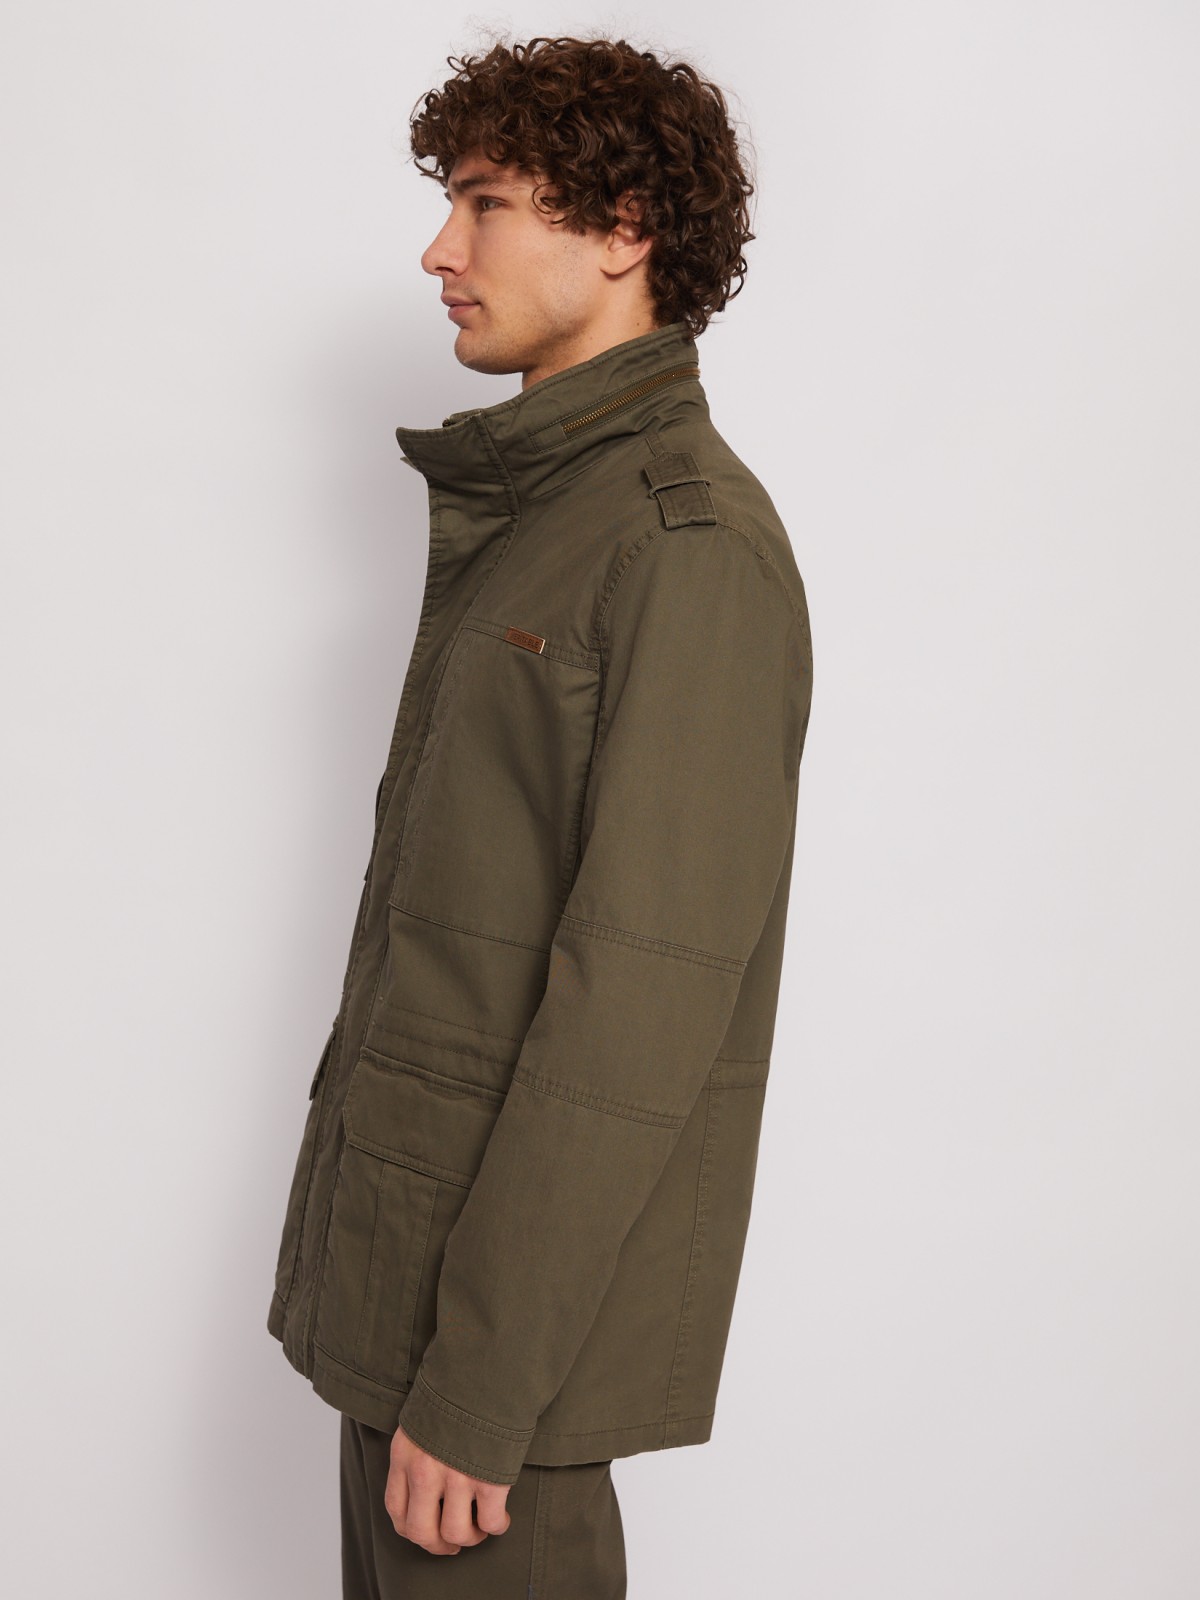 Куртка-ветровка из хлопка с воротником-стойкой zolla 014215602014, цвет хаки, размер L - фото 4